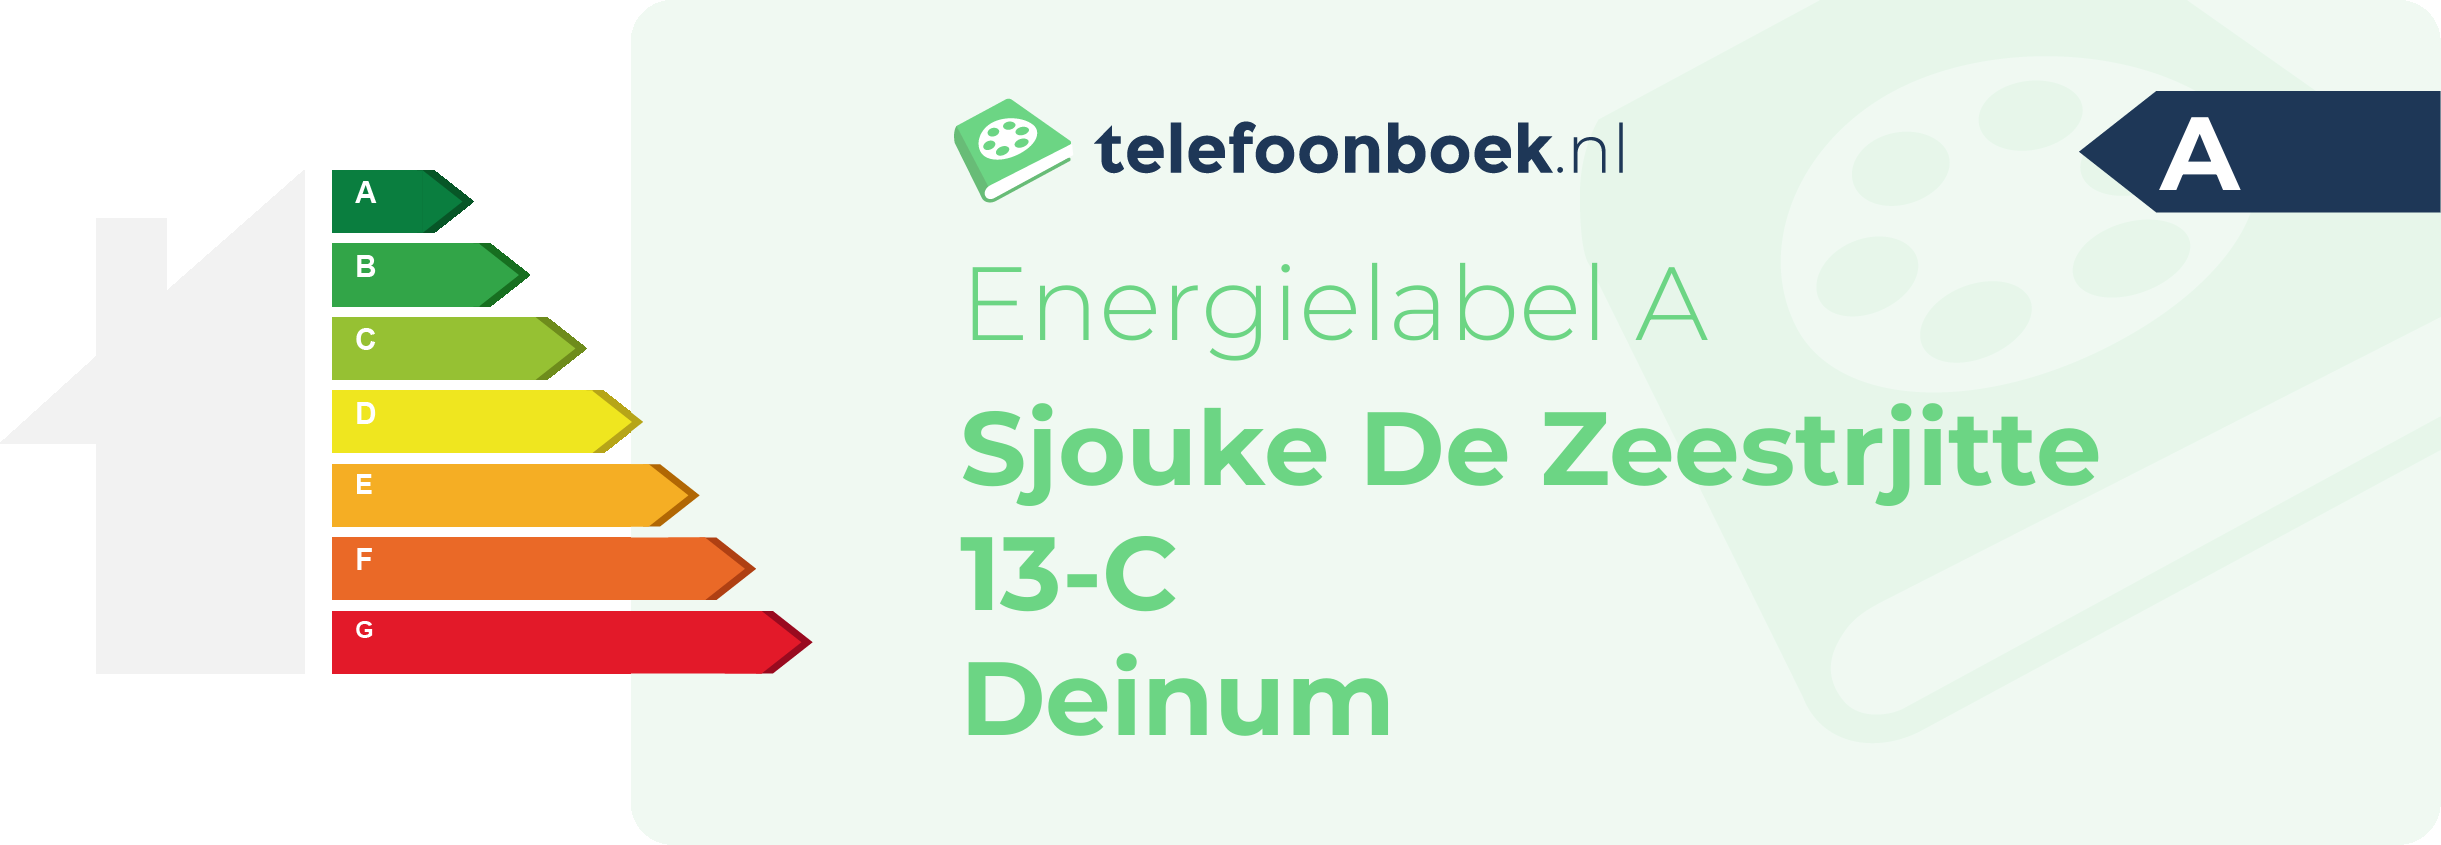 Energielabel Sjouke De Zeestrjitte 13-C Deinum